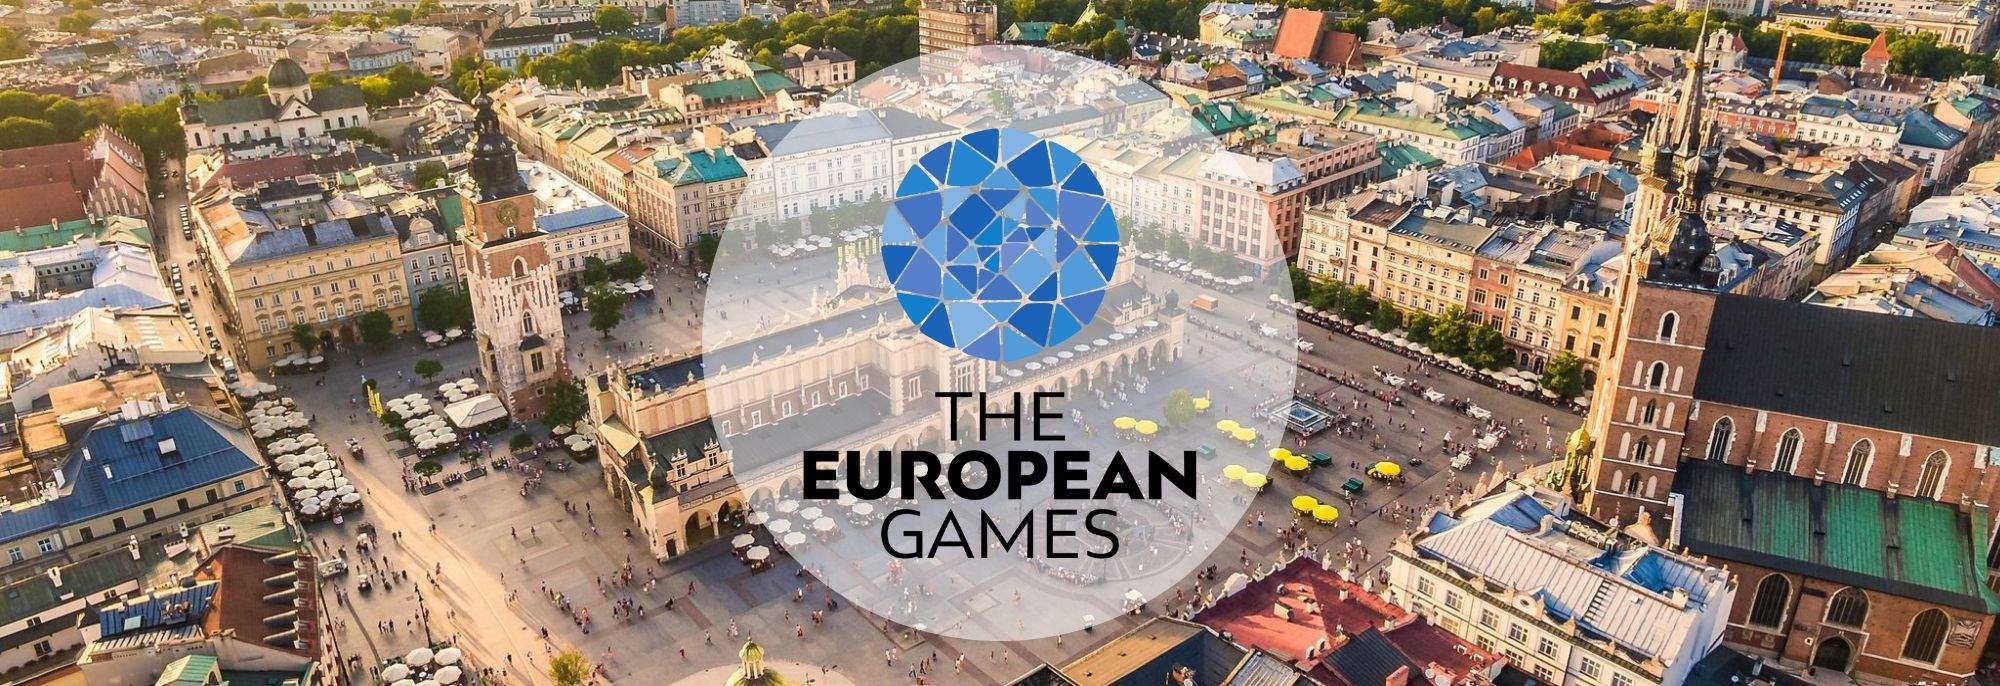 Otwarcie III Igrzysk Europejskich w Krakowie i Małopolsce 2023 – spektakl sportu i kultury